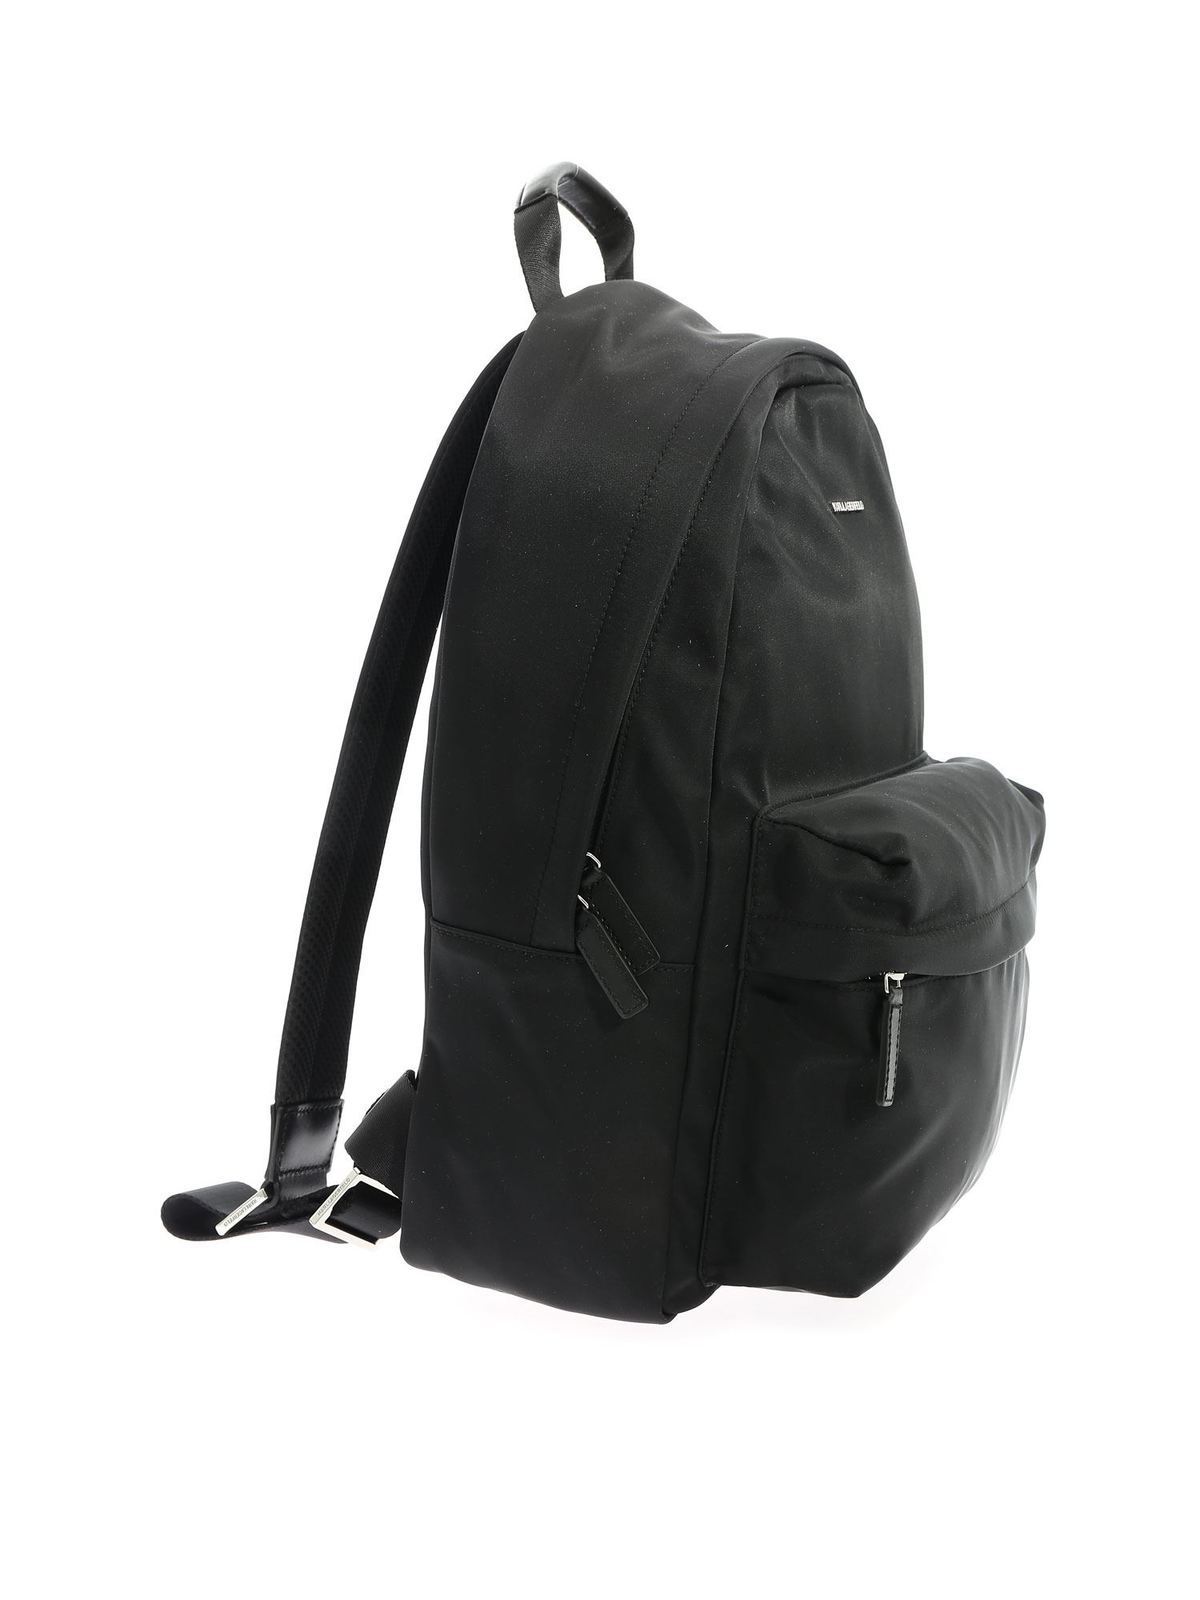 Karl Lagerfeld brand new laptop bag (European design)